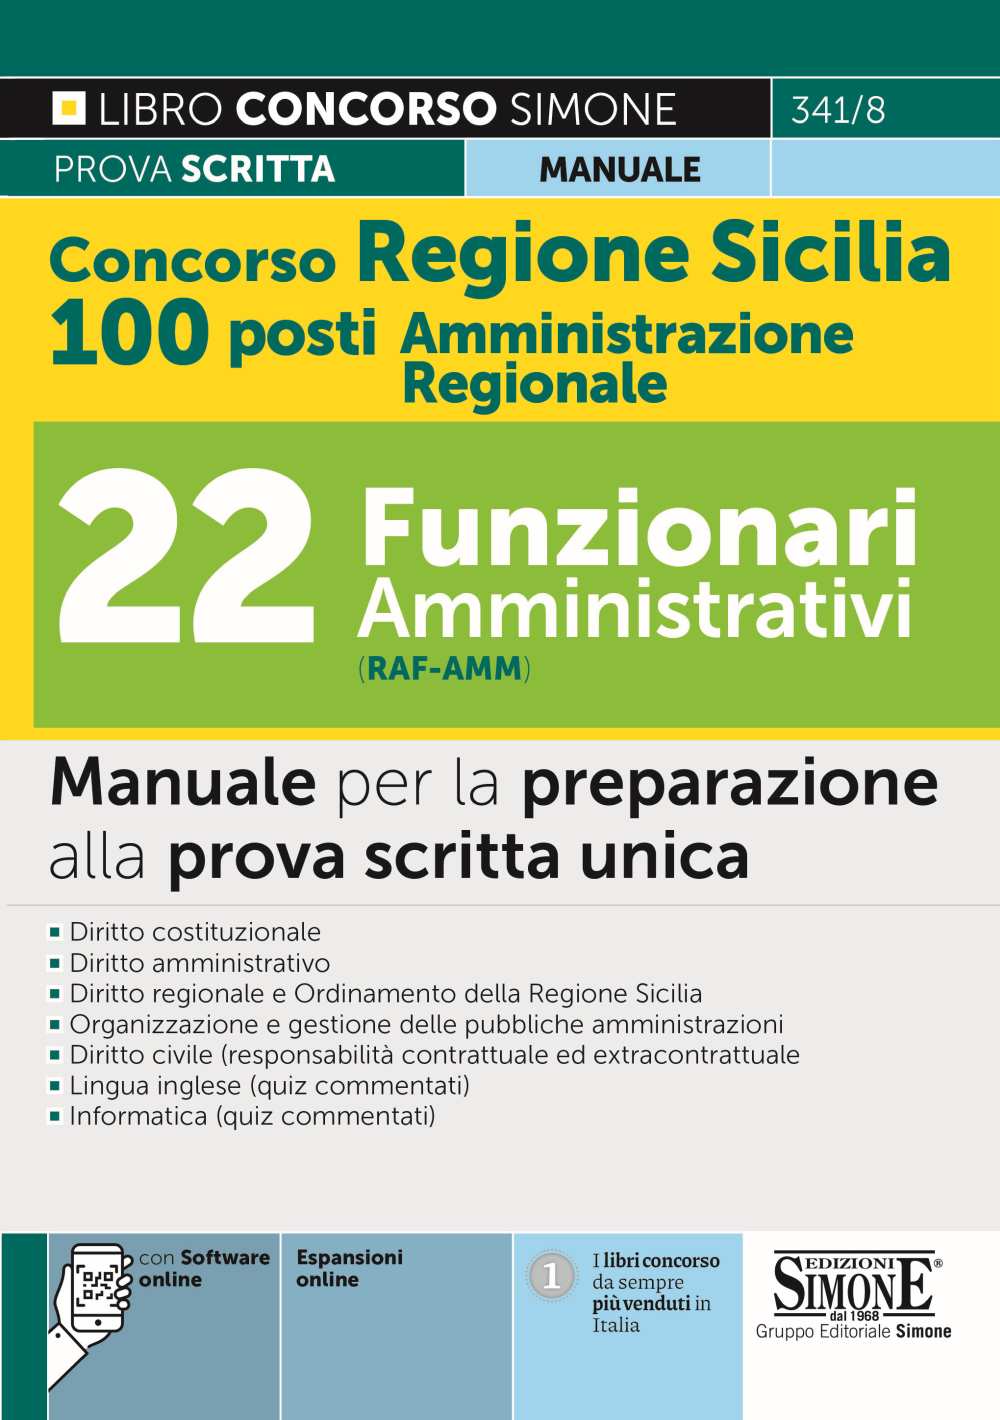 Concorso Regione Sicilia 100 posti Amministrazione Regionale - 22 Funzionari amministrativi (cod. RAF-AMM) - Manuale - 341/8